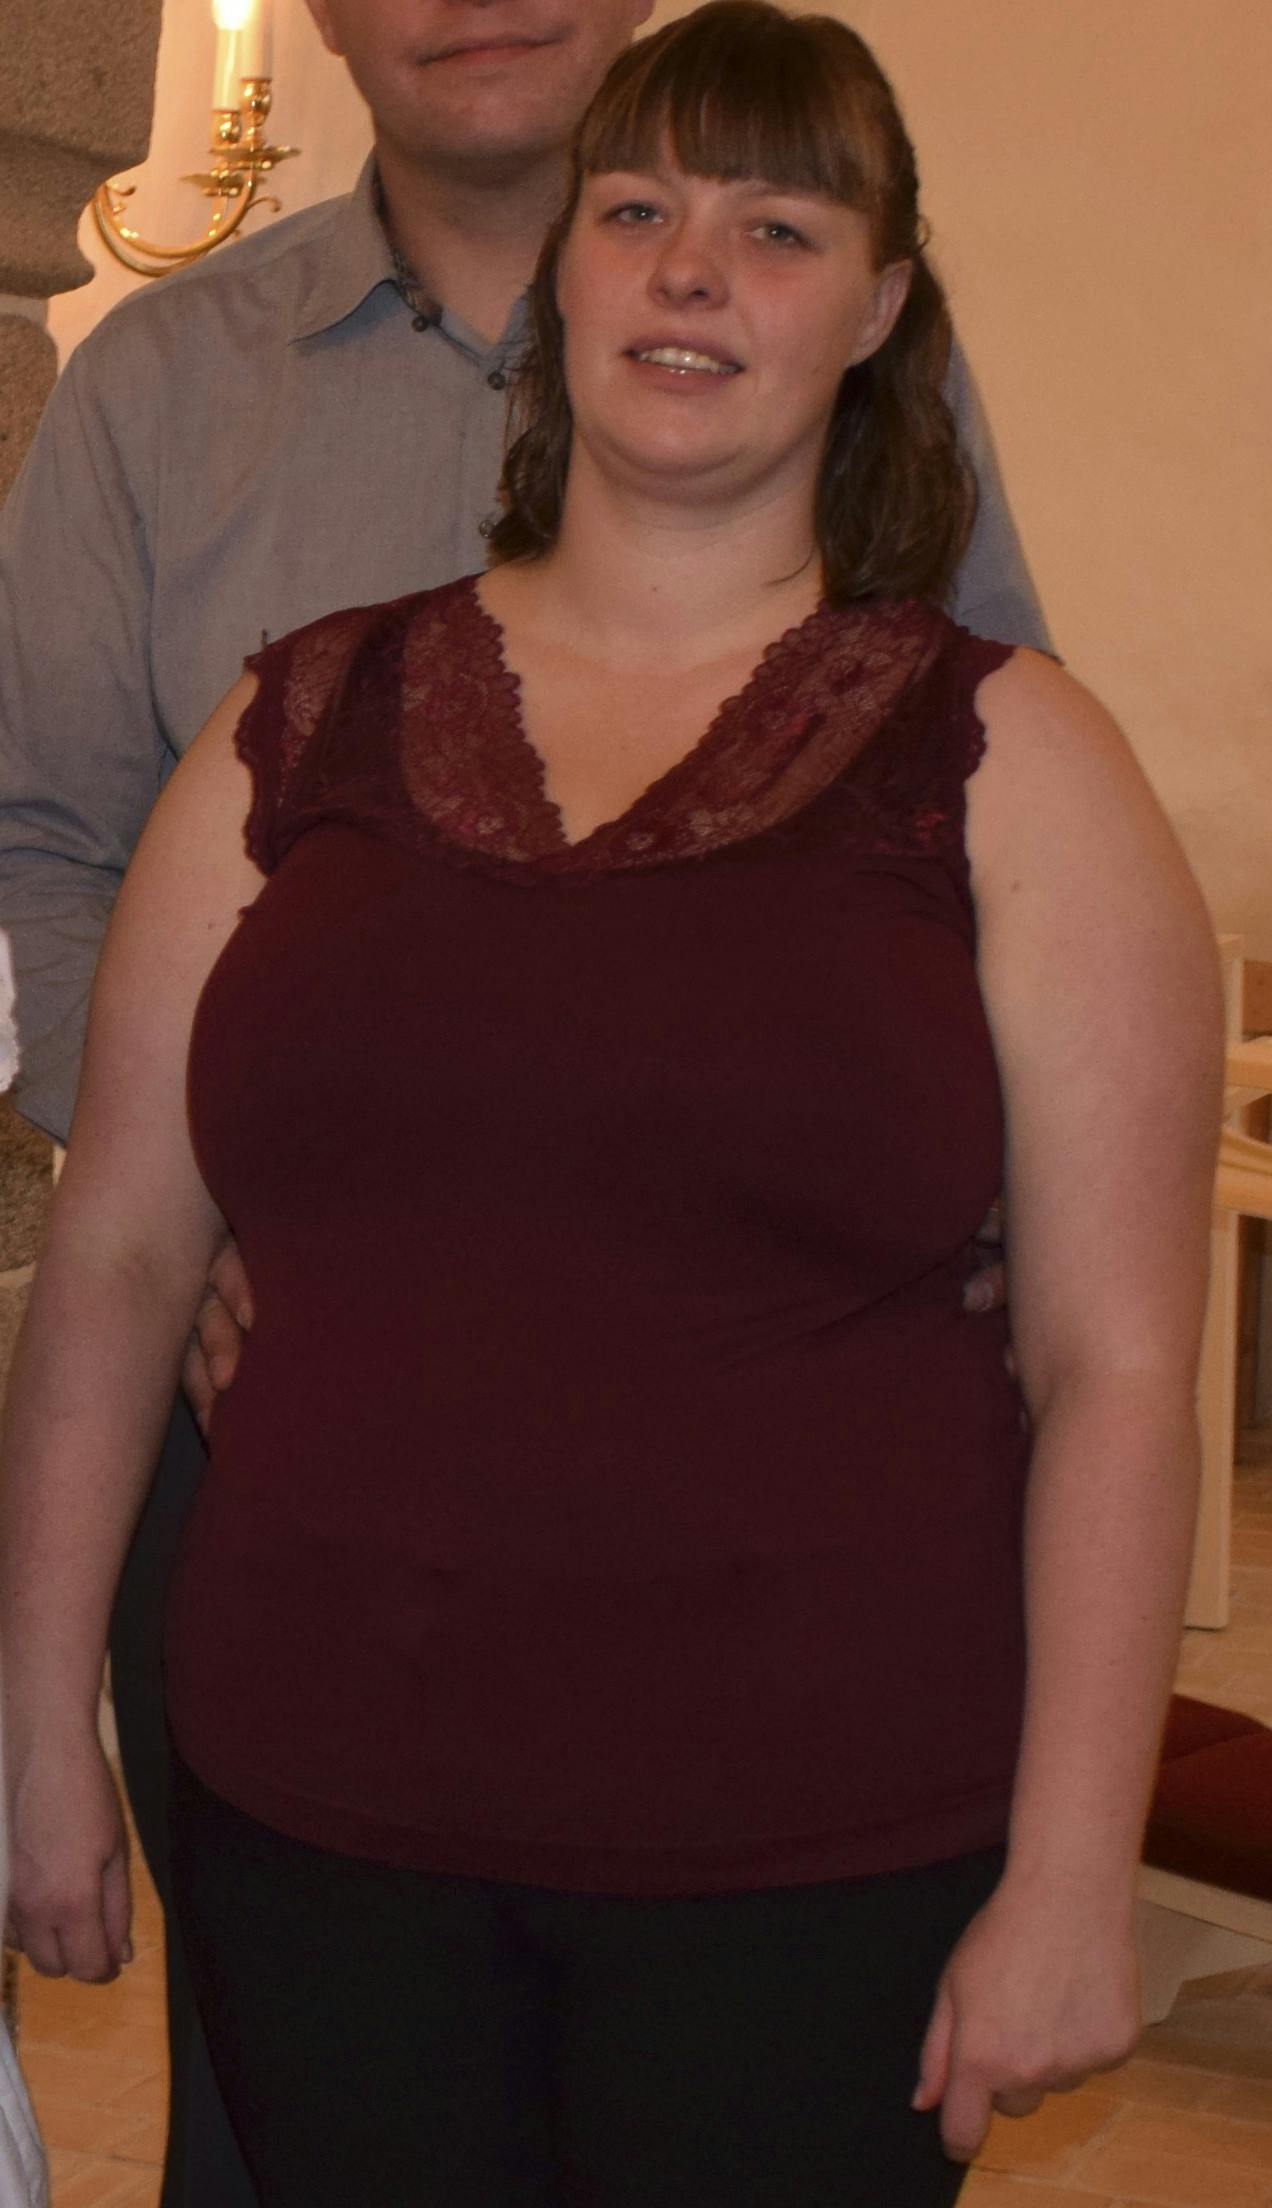 Et privat og beskåret foto af Heidi Sørensen, da hun vejede 96 kilo.